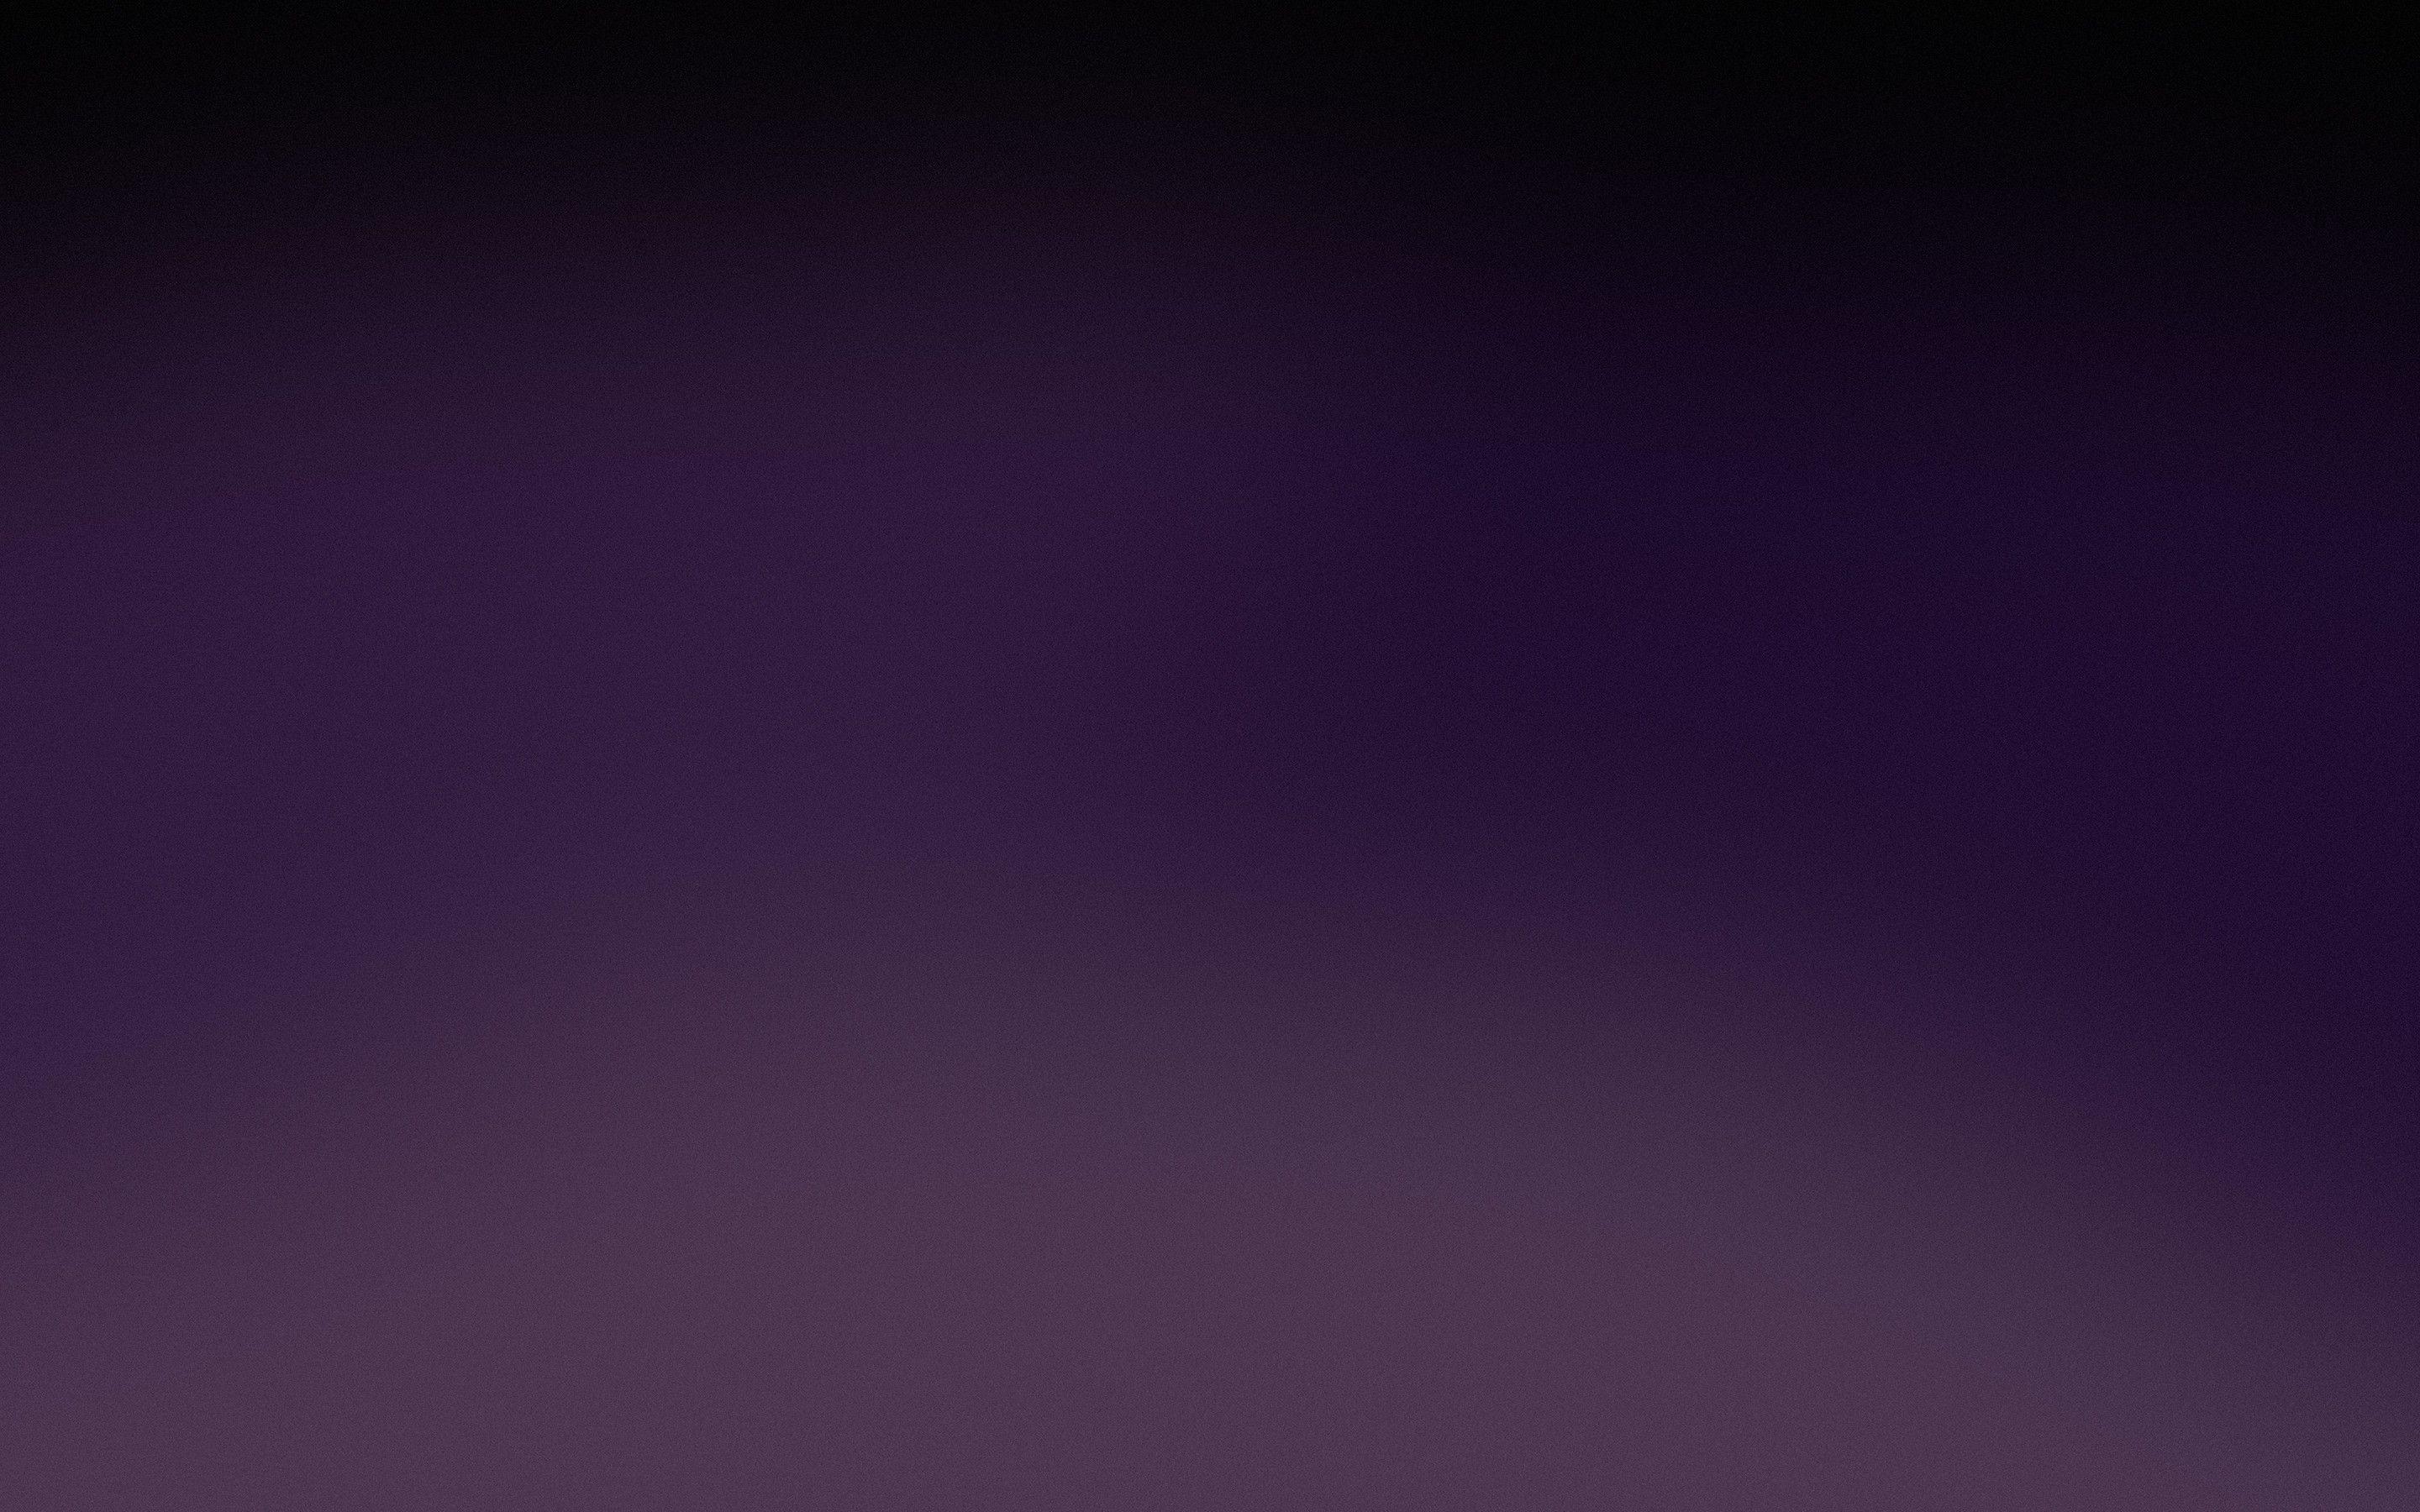 Nếu bạn đang tìm kiếm một nền Gradient đen tối đẹp mắt để làm hình nền cho máy tính của mình, hãy xem hình ảnh này để tìm hiểu về các lựa chọn nền Gradient đen tối đẹp mắt trên Wallpaper Cave.